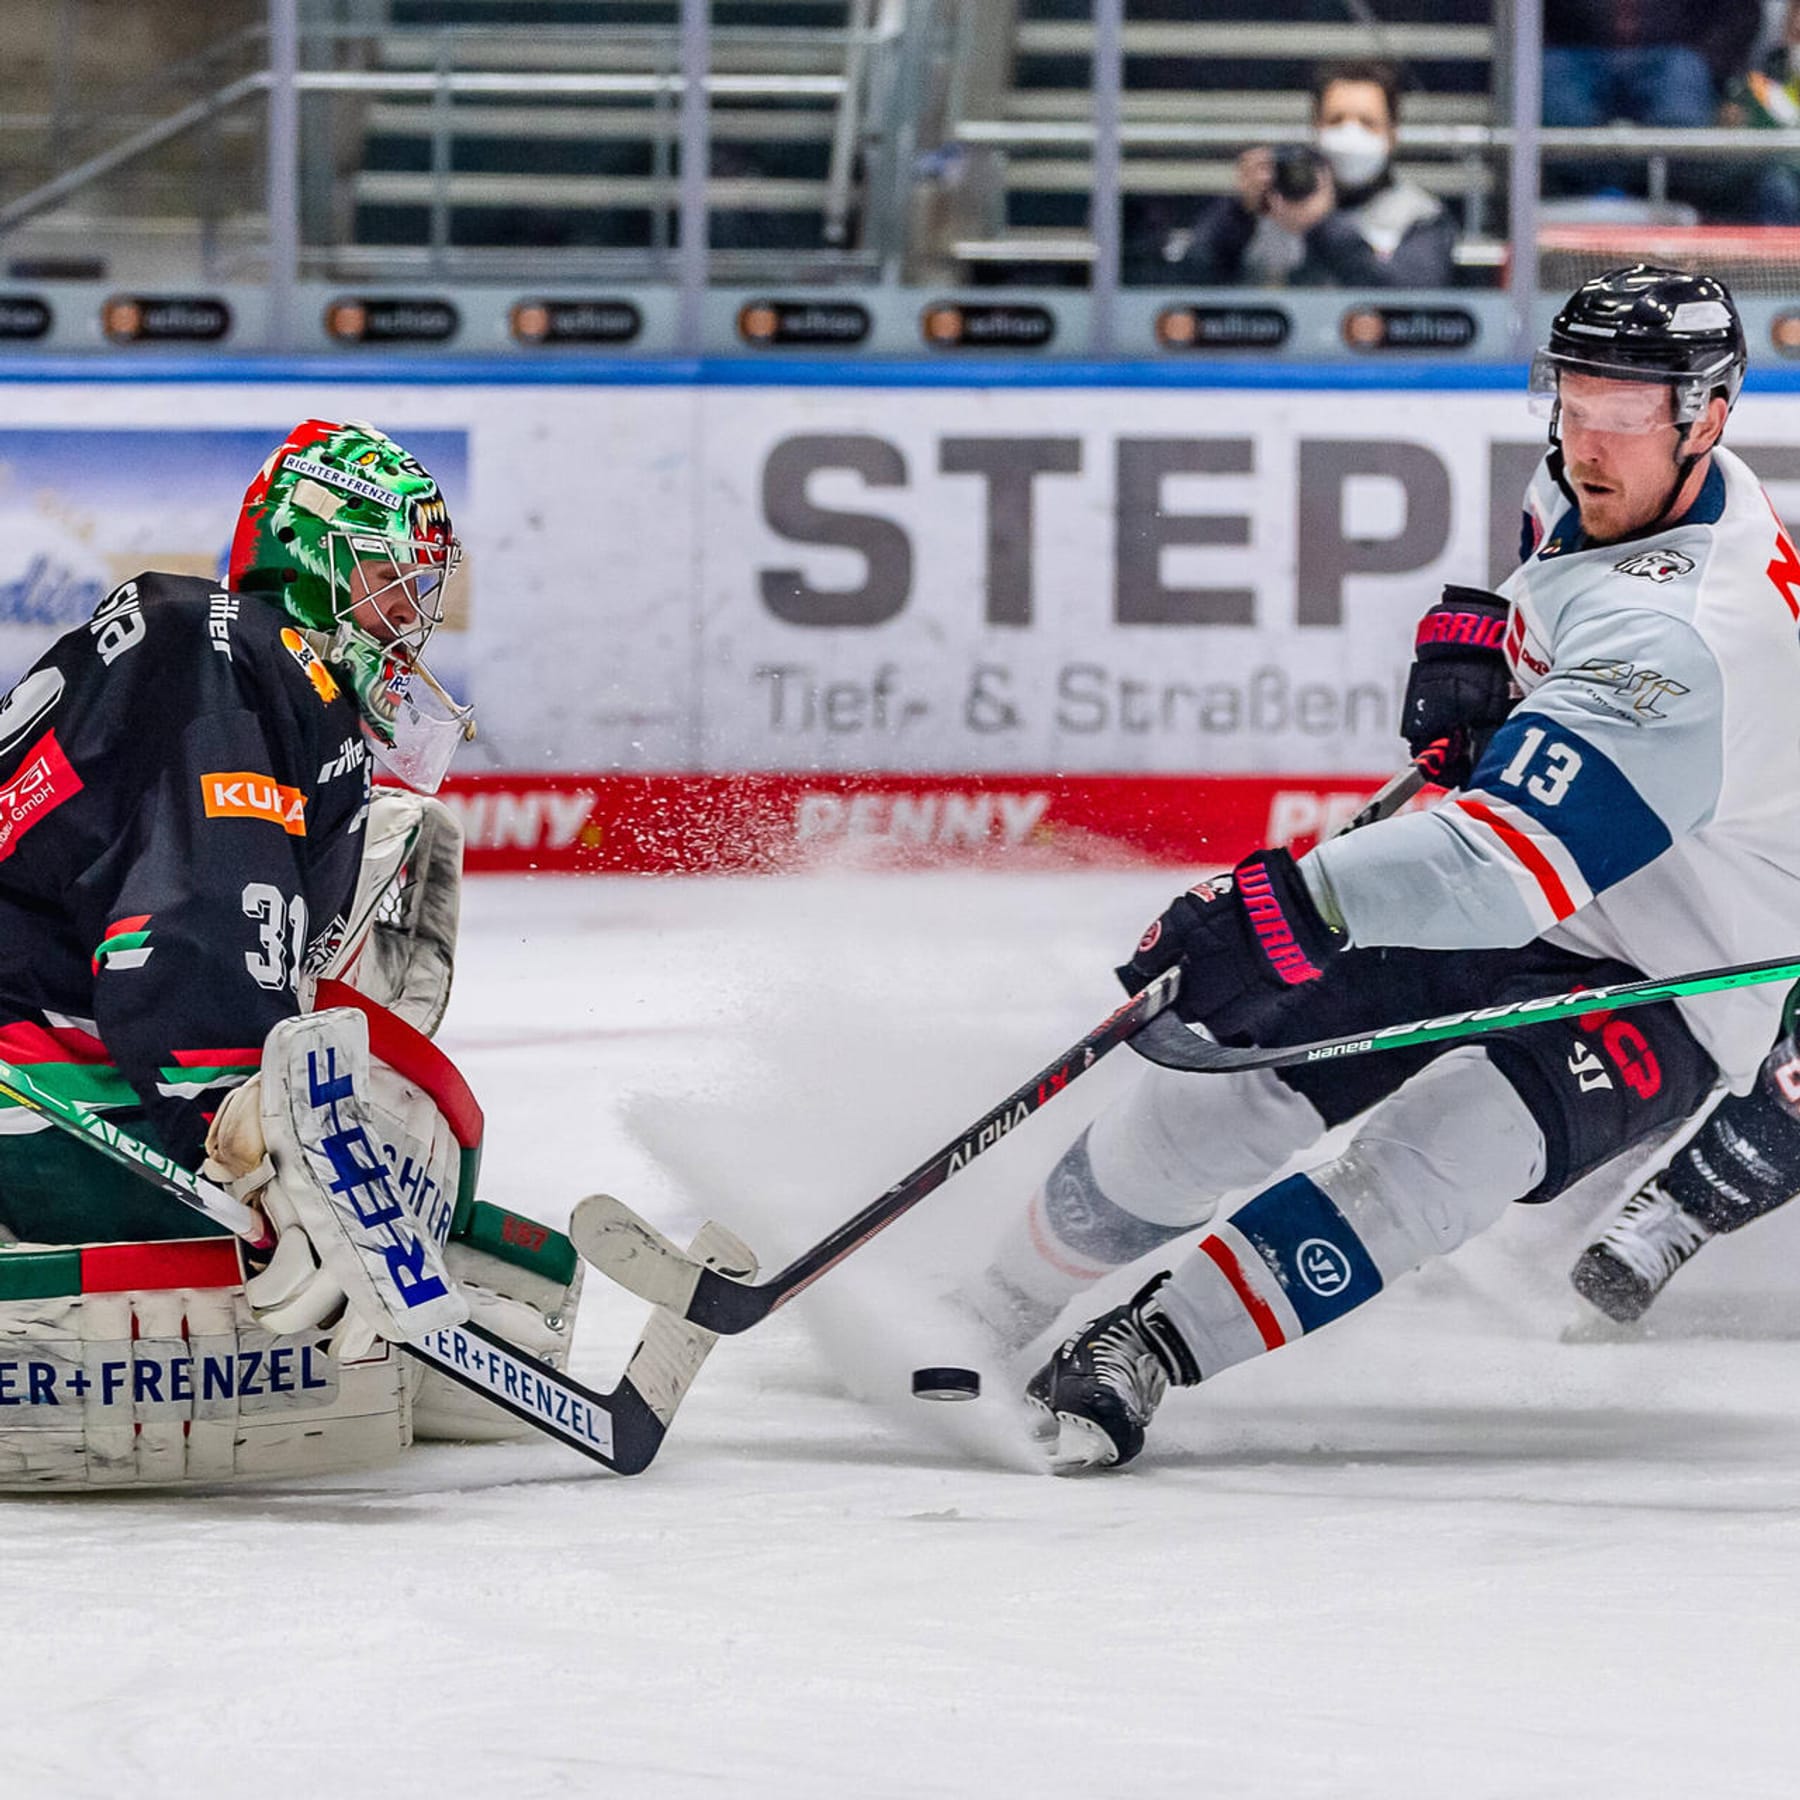 Eishockey und Co. Ex-DFL-Boss plant Streaming-Plattform mit Axel Springer